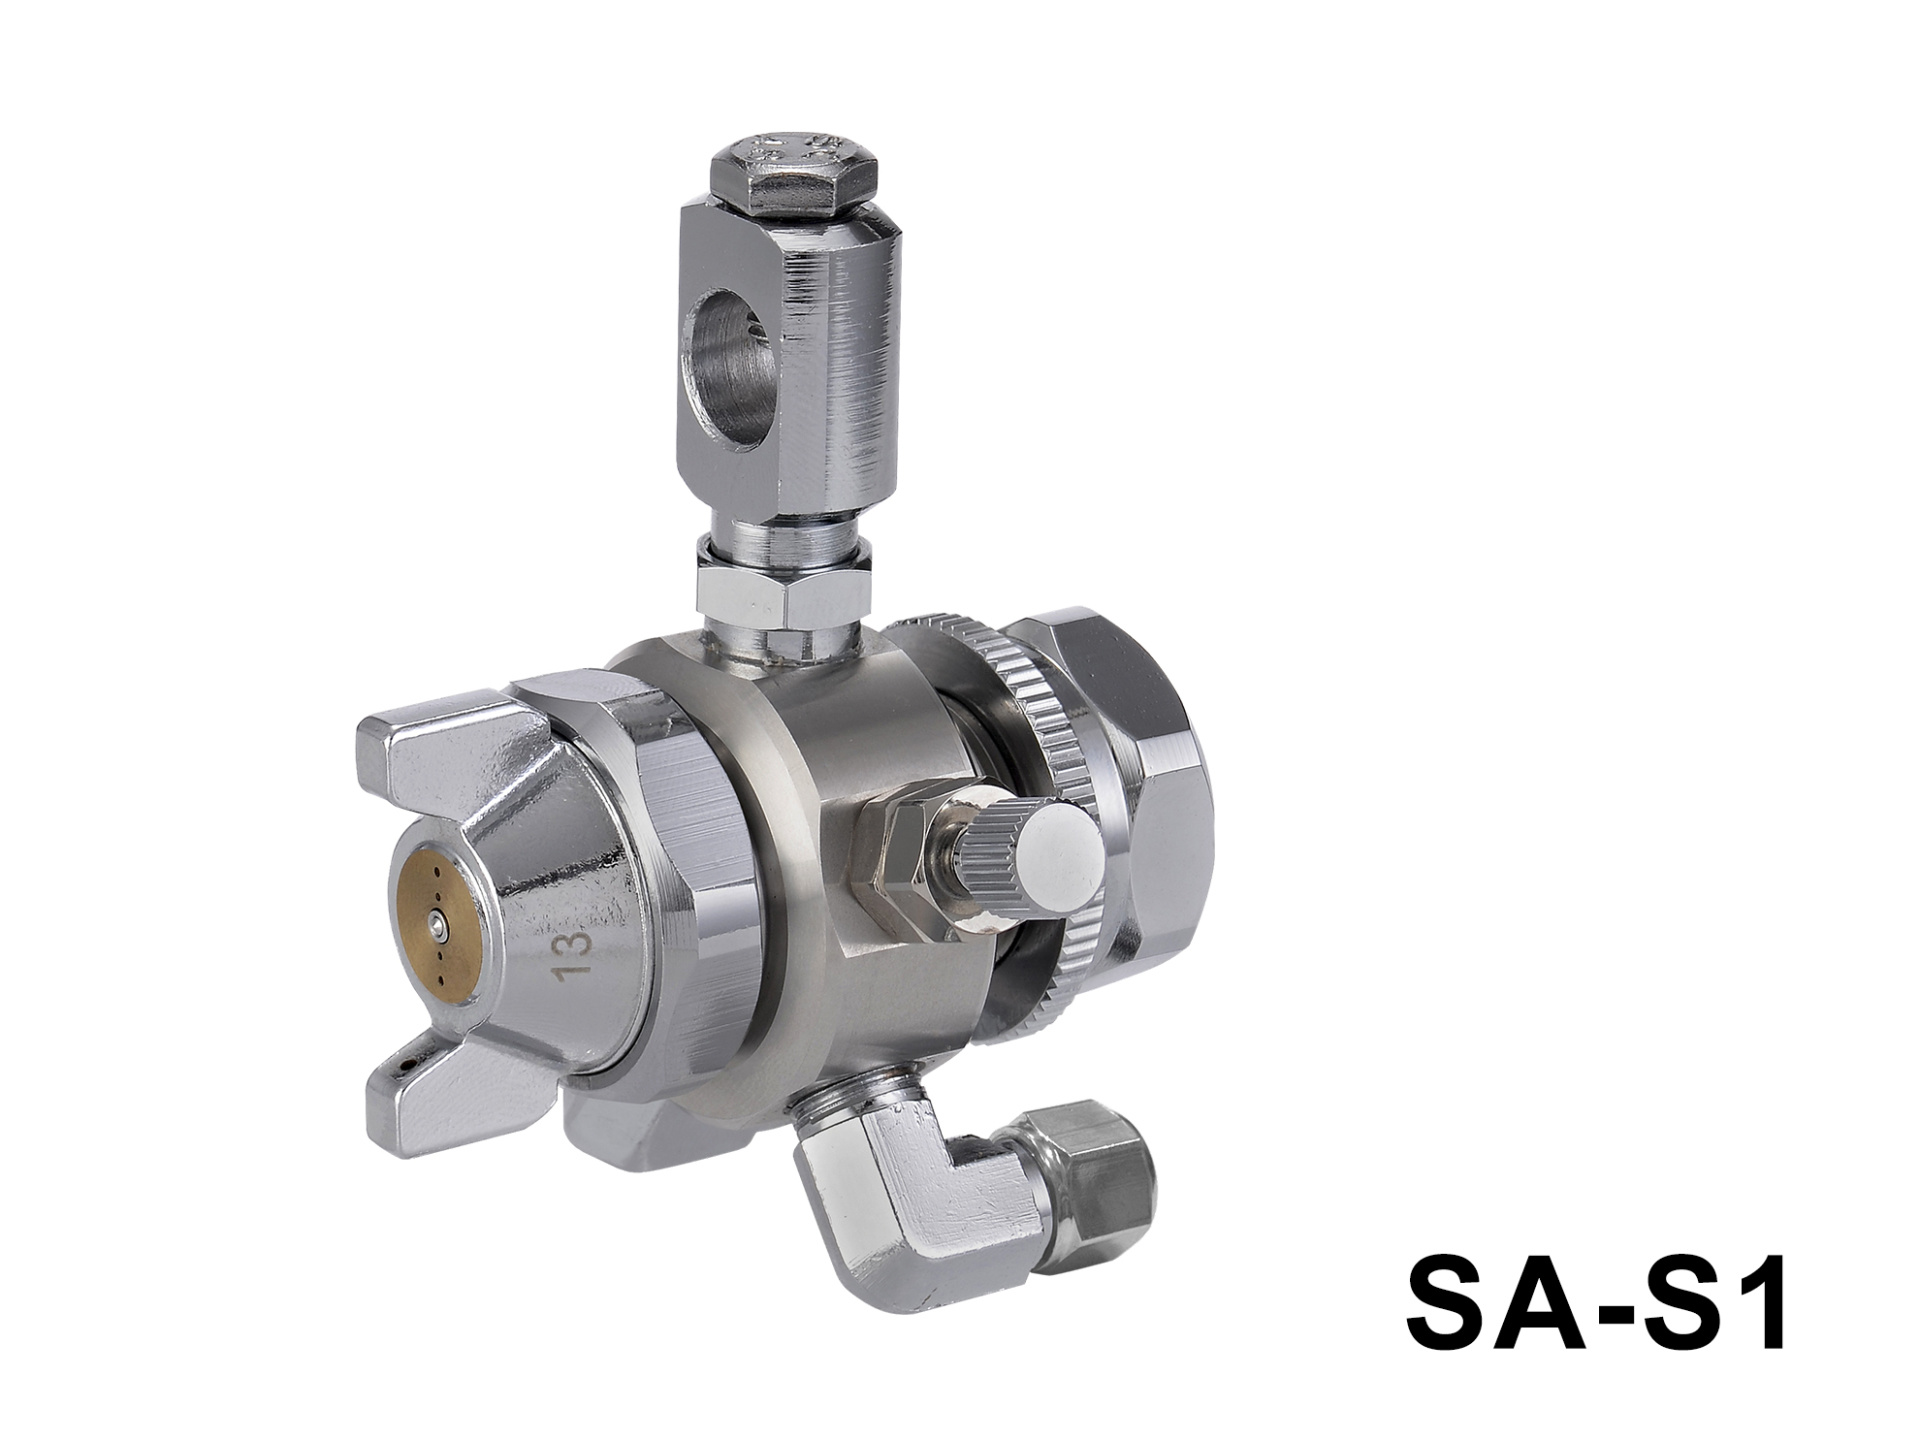 SA-S1   Simplified High-Pressure Automatic Spray Gun